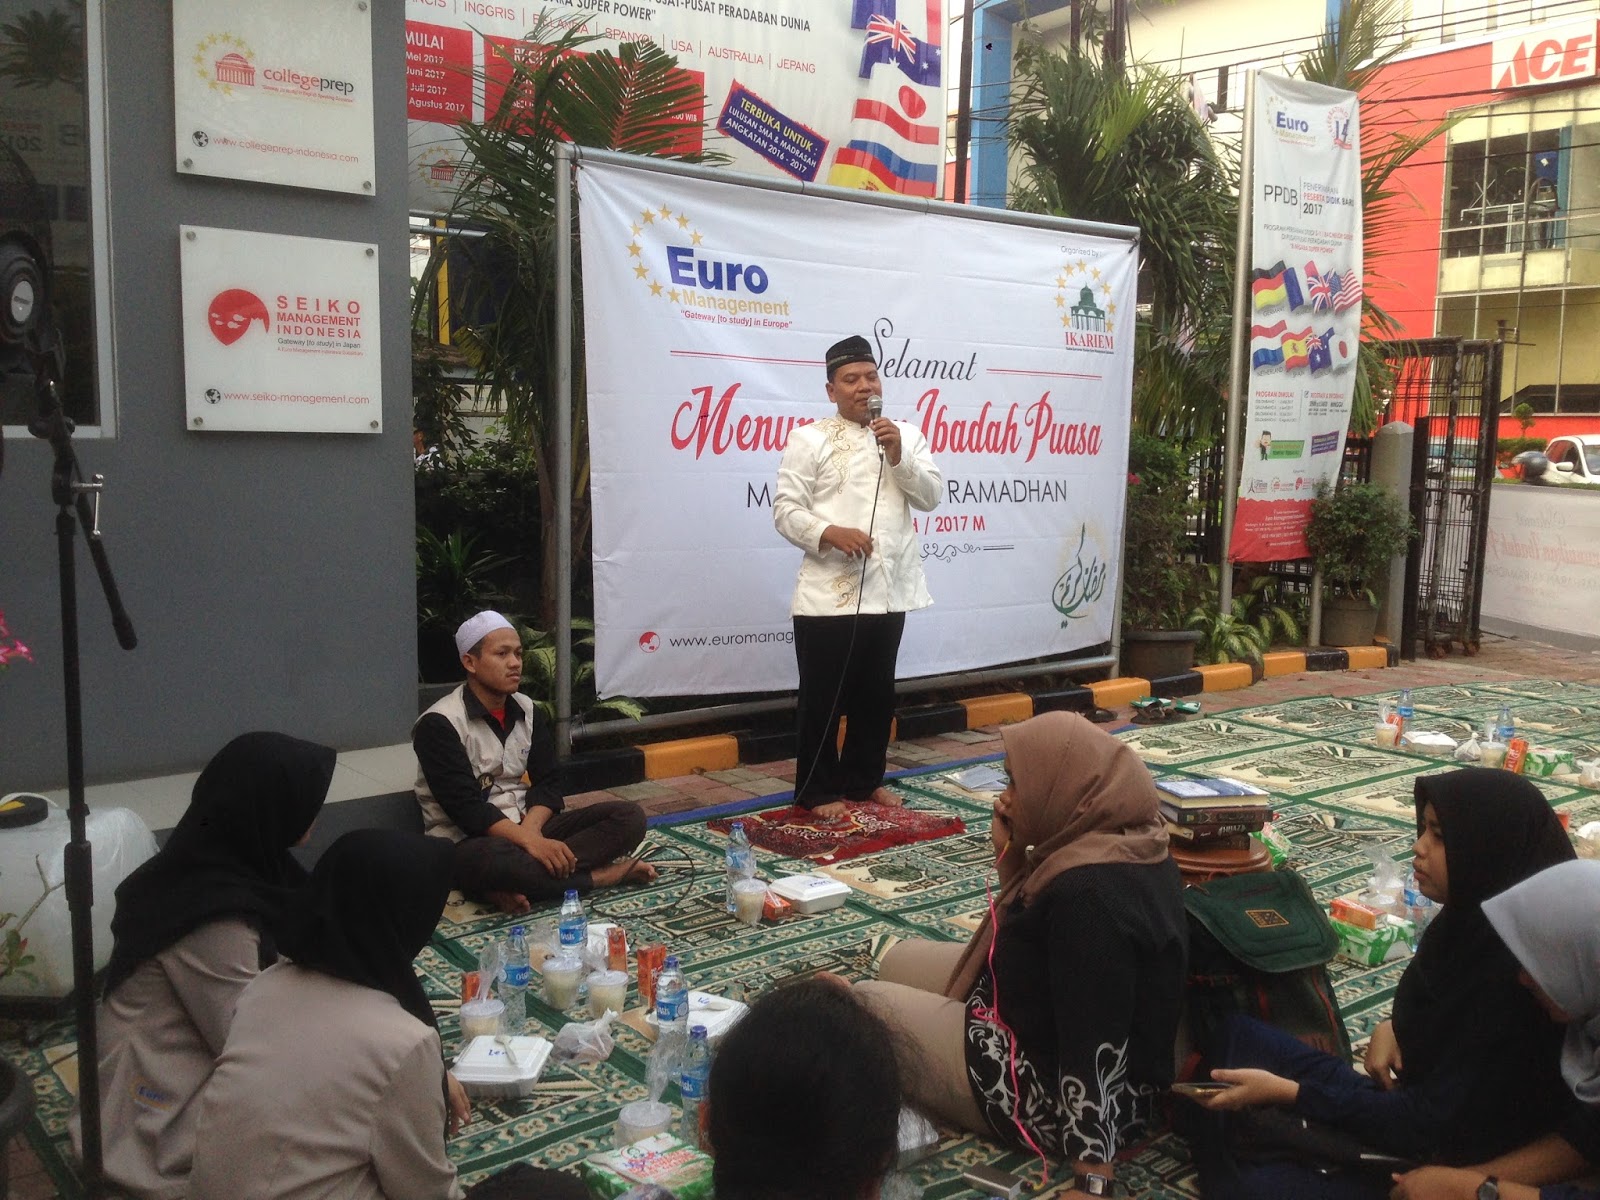 Hari ke 4 Ramadhan di Euro Management Indonesia Ngabuburit bareng staf karyawan Siswa PPS S1 Jerman dan Prancis Acara dimulai dengan tilawah Al Quran